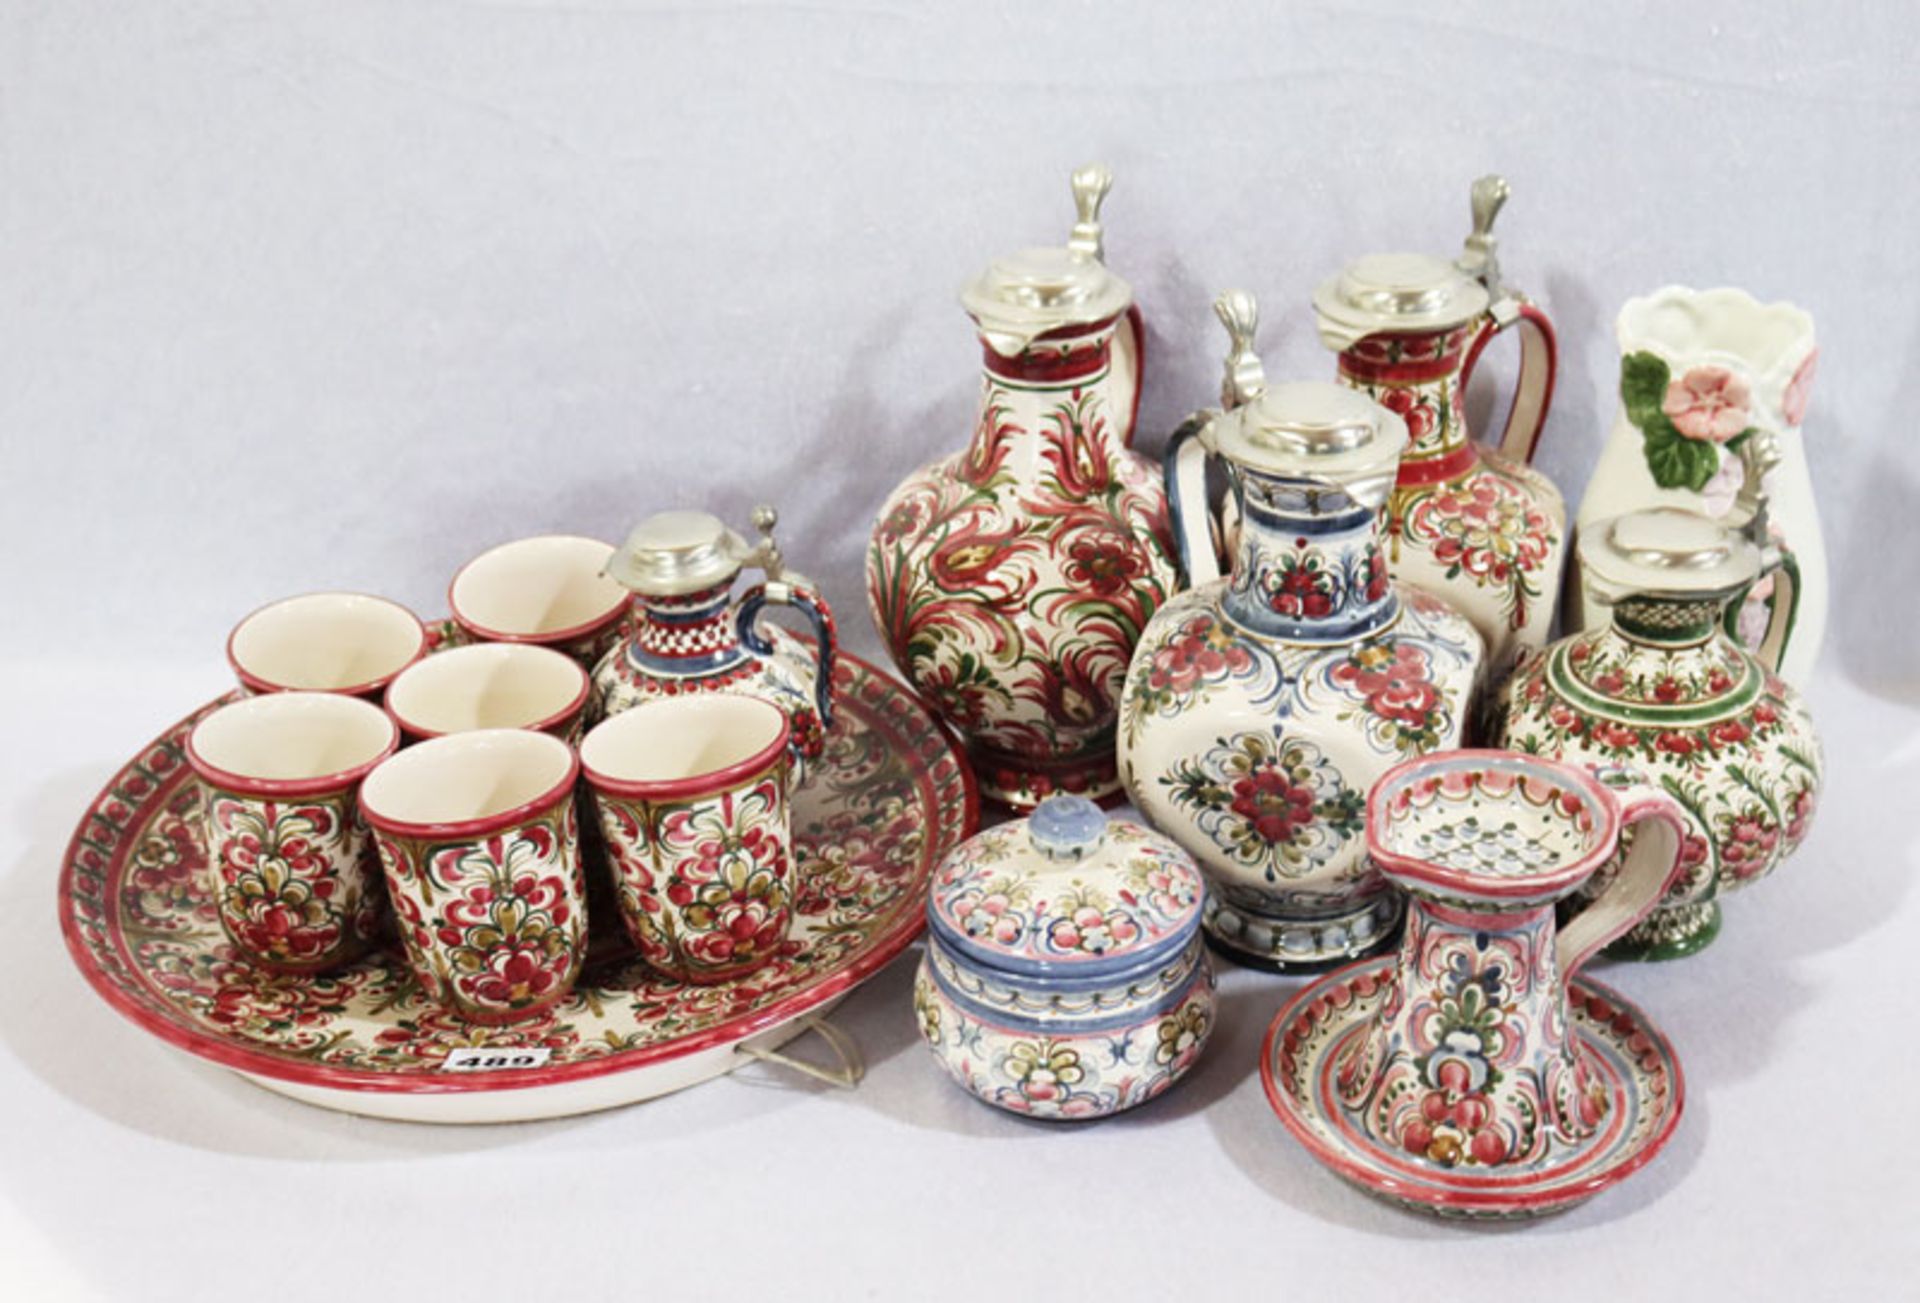 Keramik-Konvolut: 5 Henkelkrüge mit Zinndeckel, Teller, 6 Becher, Vase, Deckeldose und